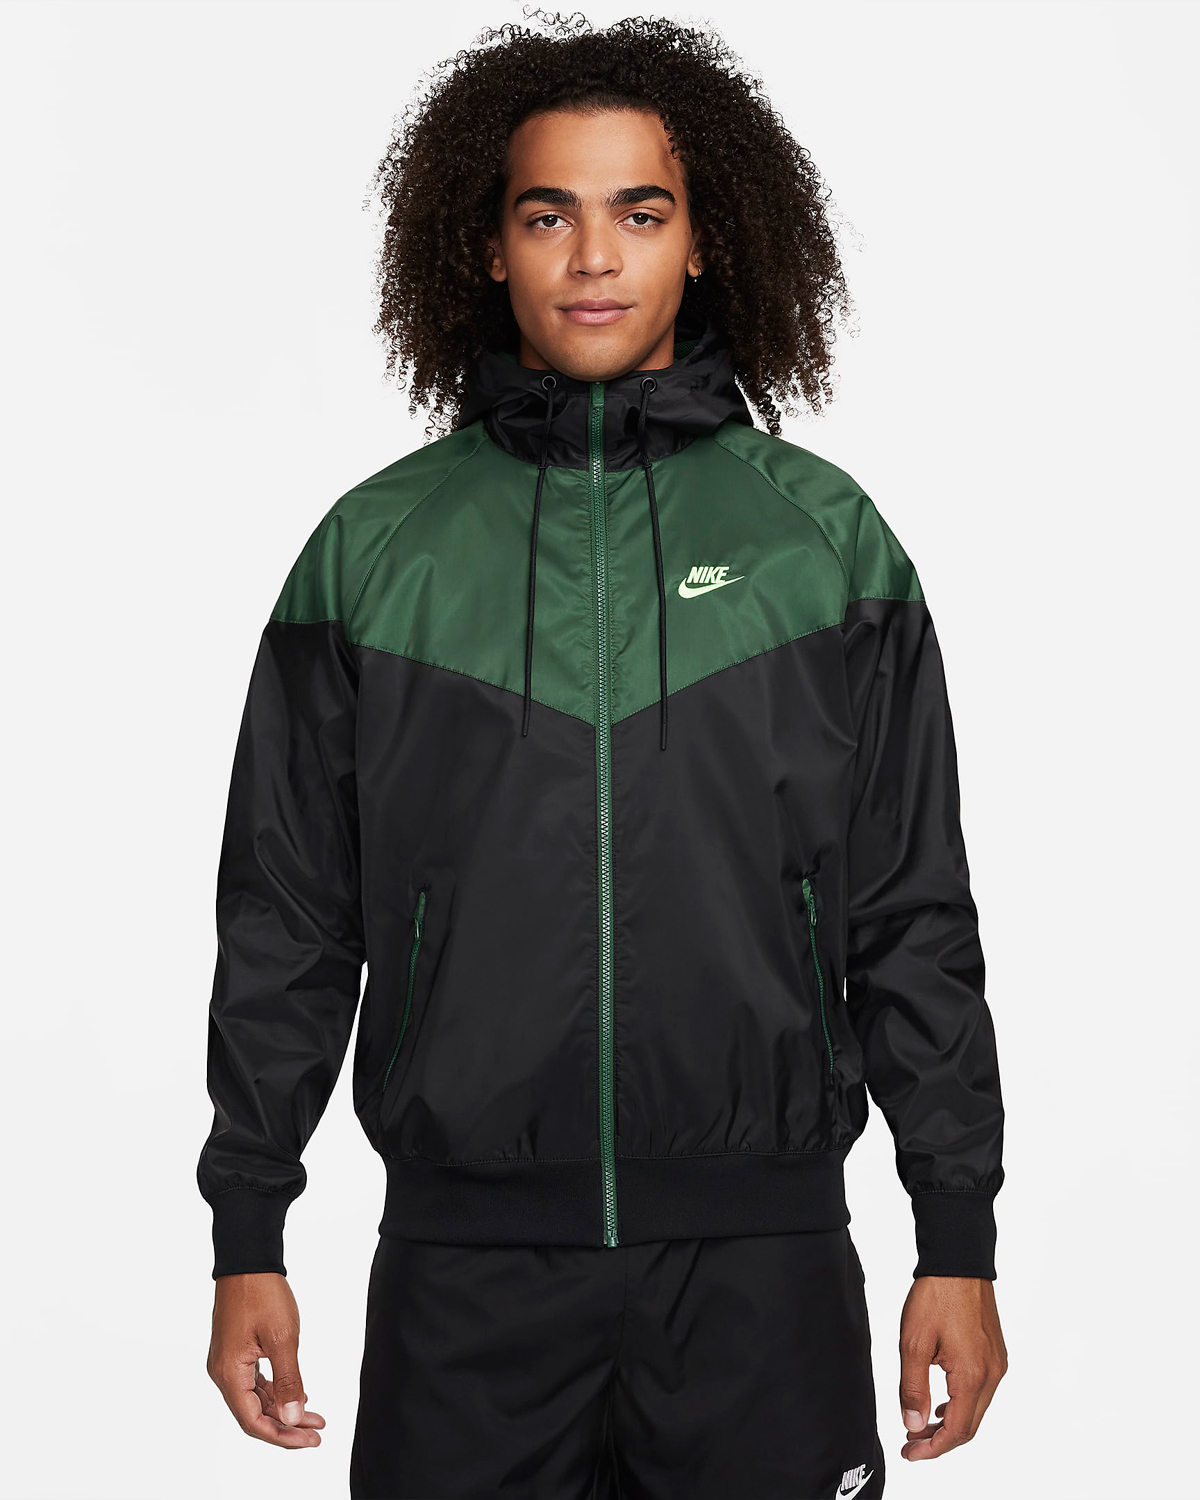 Nike-Sportswear-Windrunner-Jacket-Black-Fir-Green